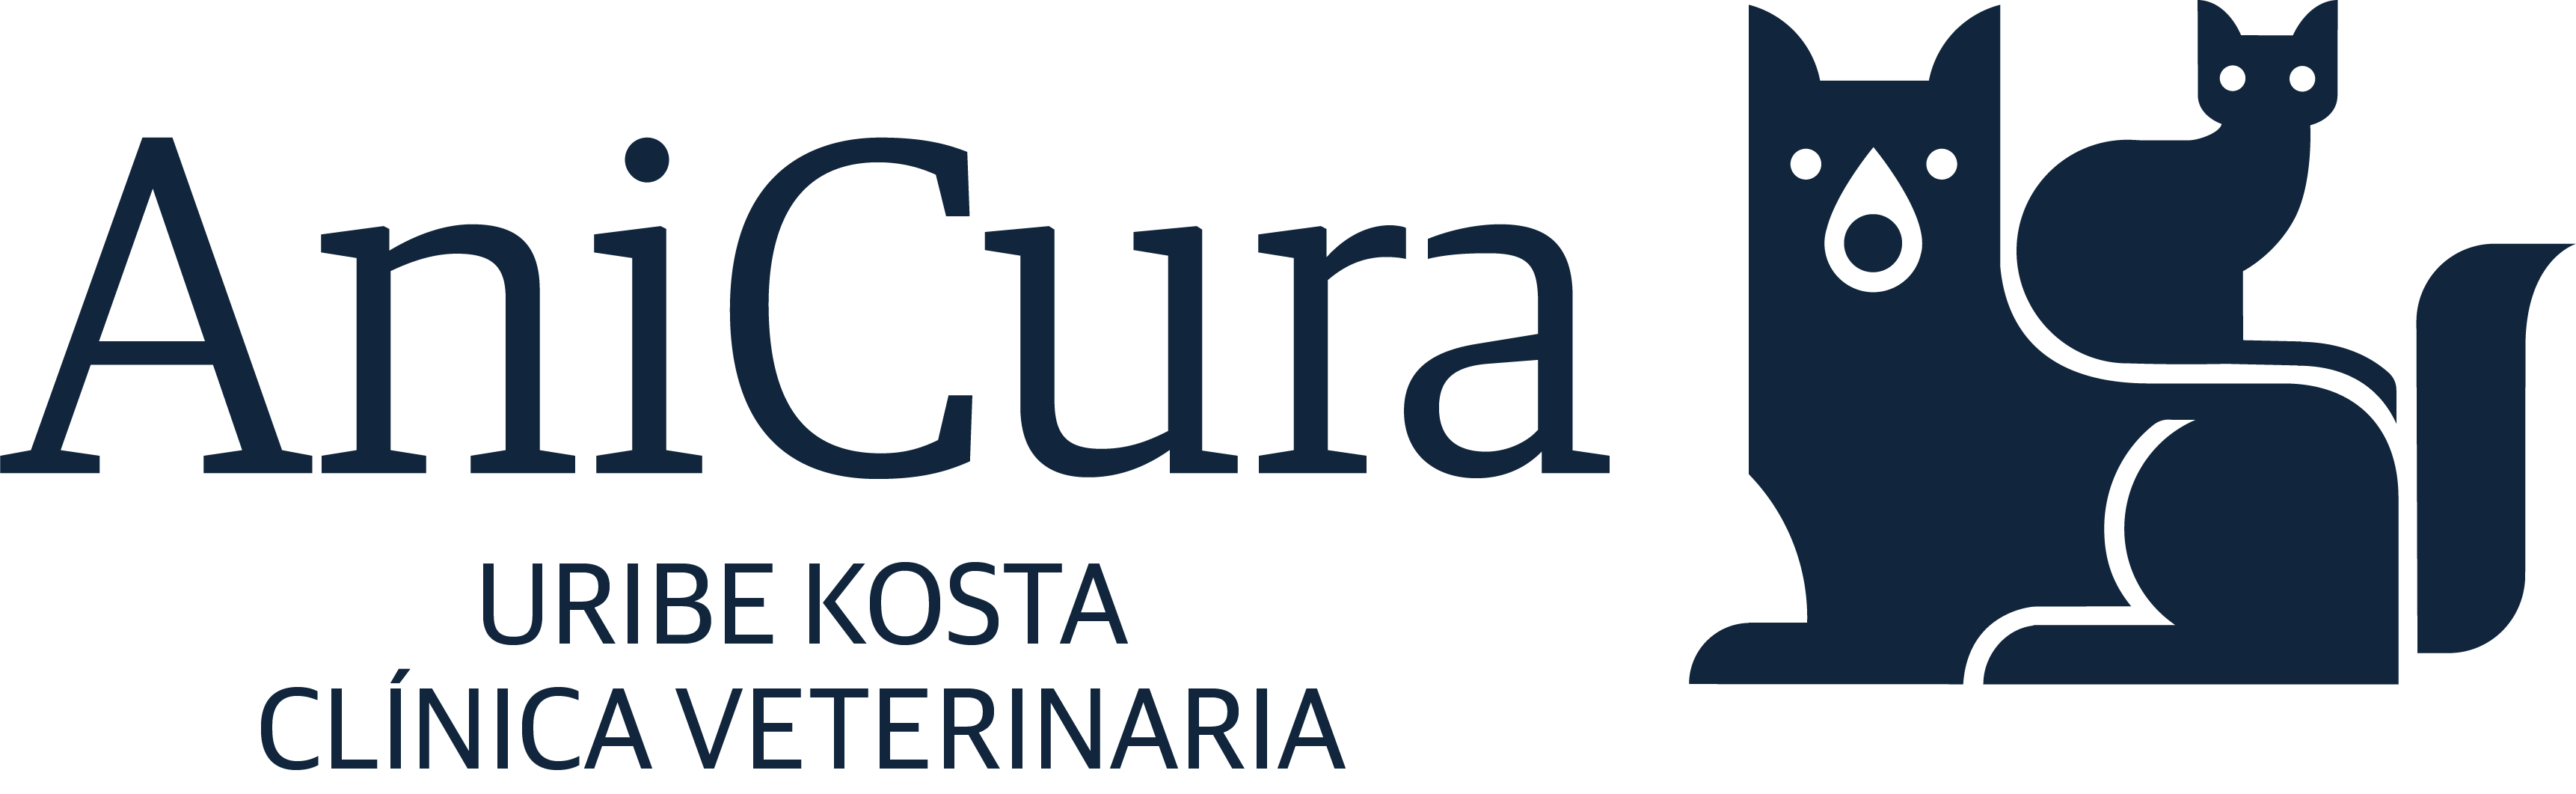 AniCura Uribe Kosta Clínica Veterinaria logo